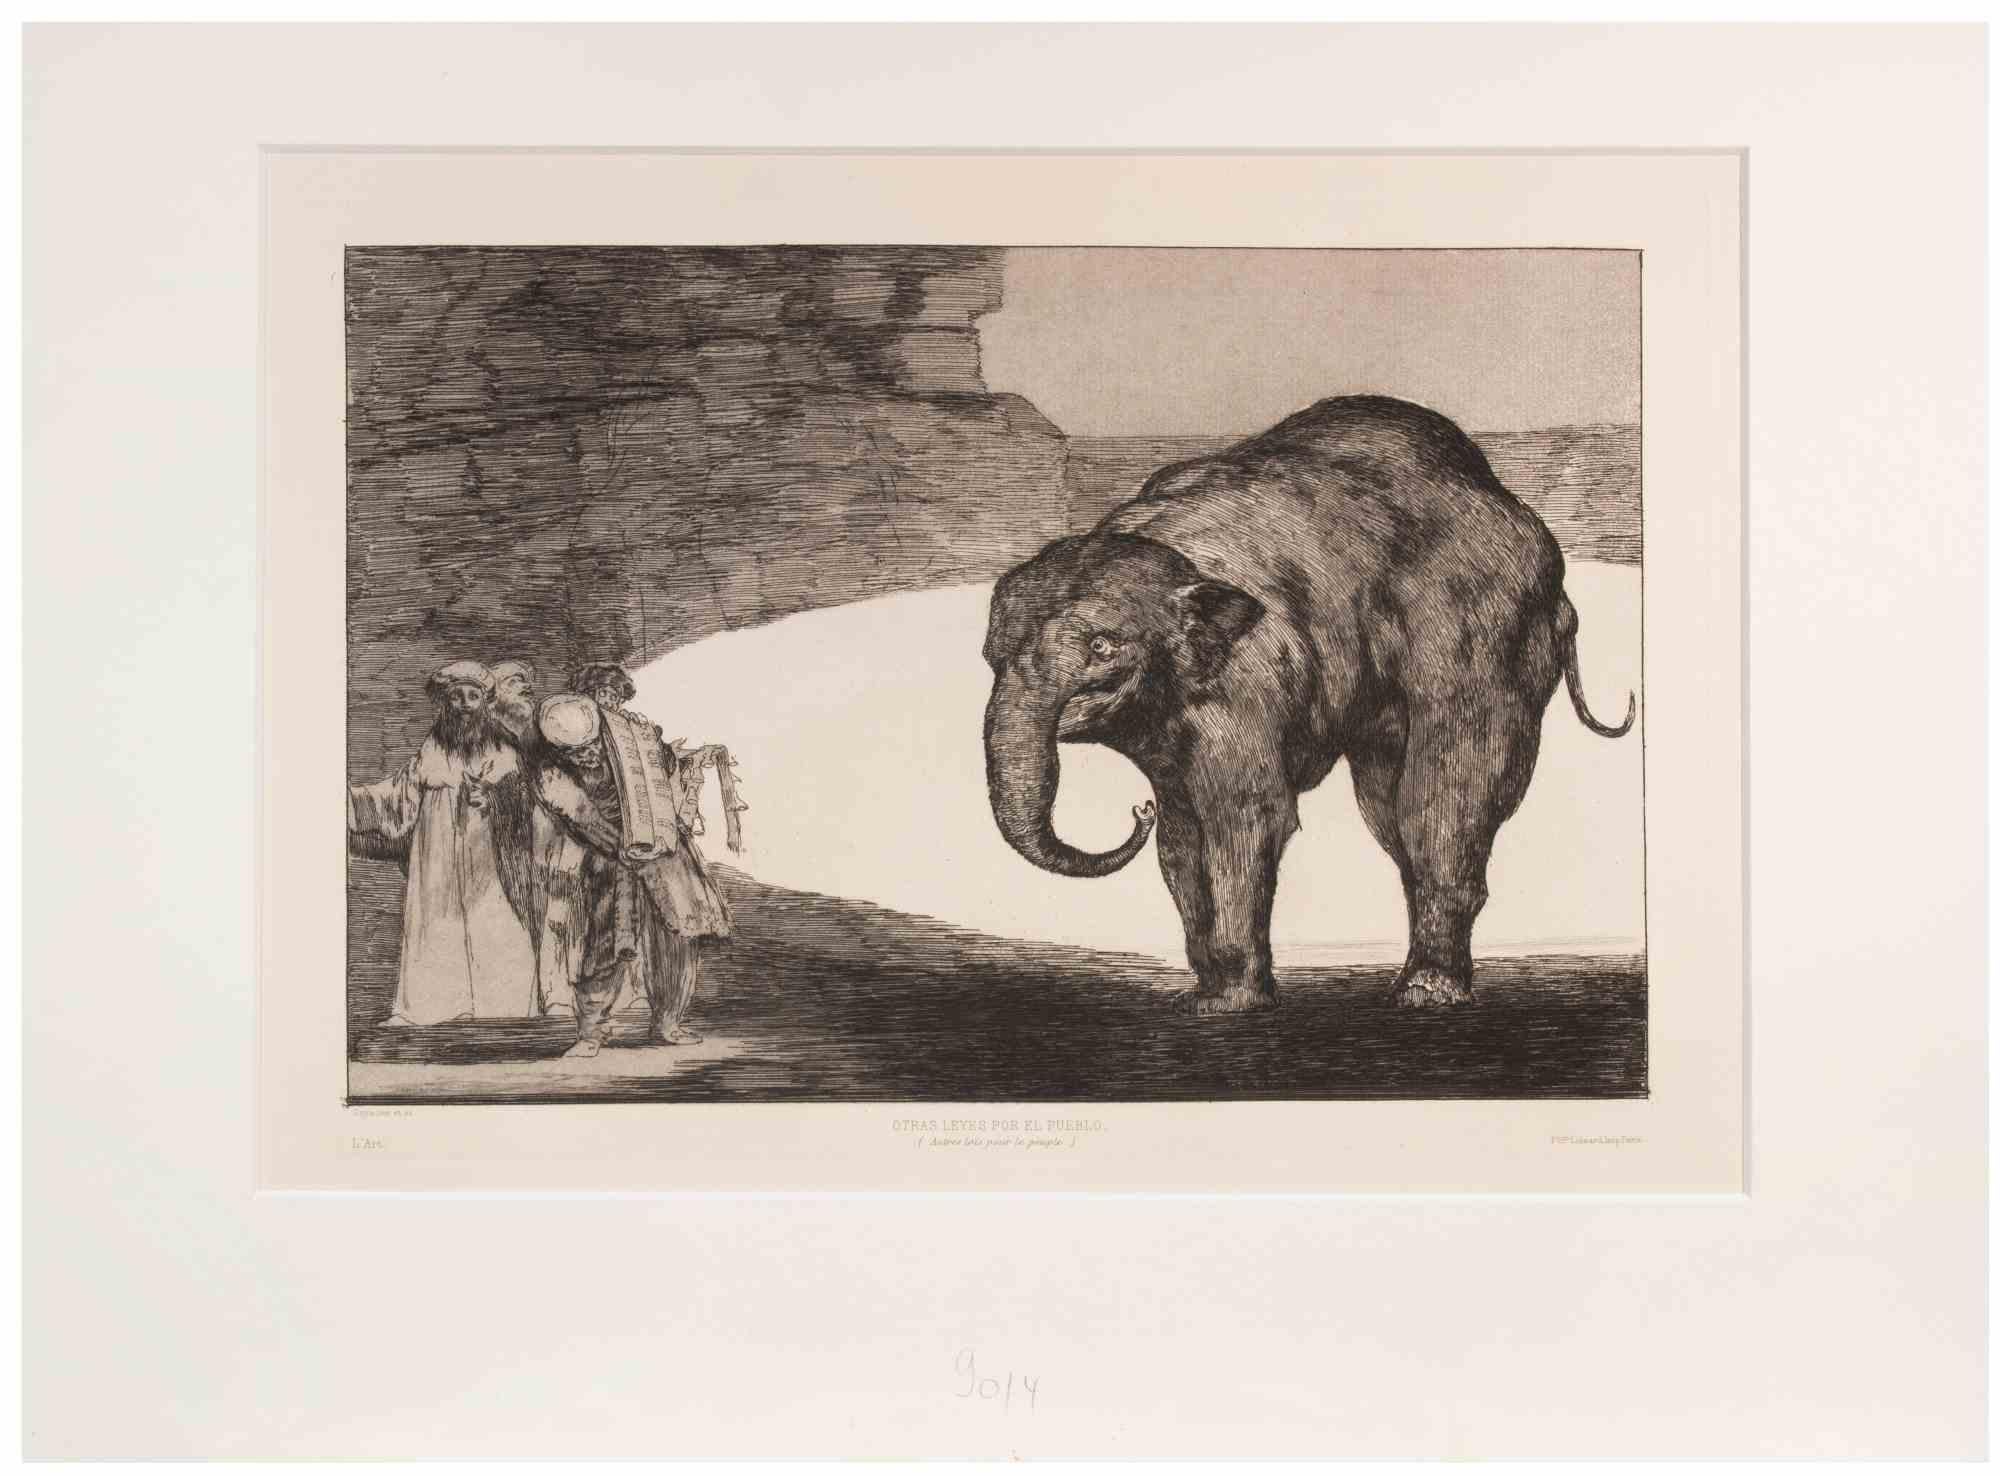 Otras Leyes por el Pueblo est une œuvre d'art moderne réalisée par Francisco Goya.

Eau-forte et aquatinte, de la série "Los Proverbios", réalisée en 1815.

Cet exemplaire appartient à l'édition de "L'Art", publiée en 1877.

Très bon état.